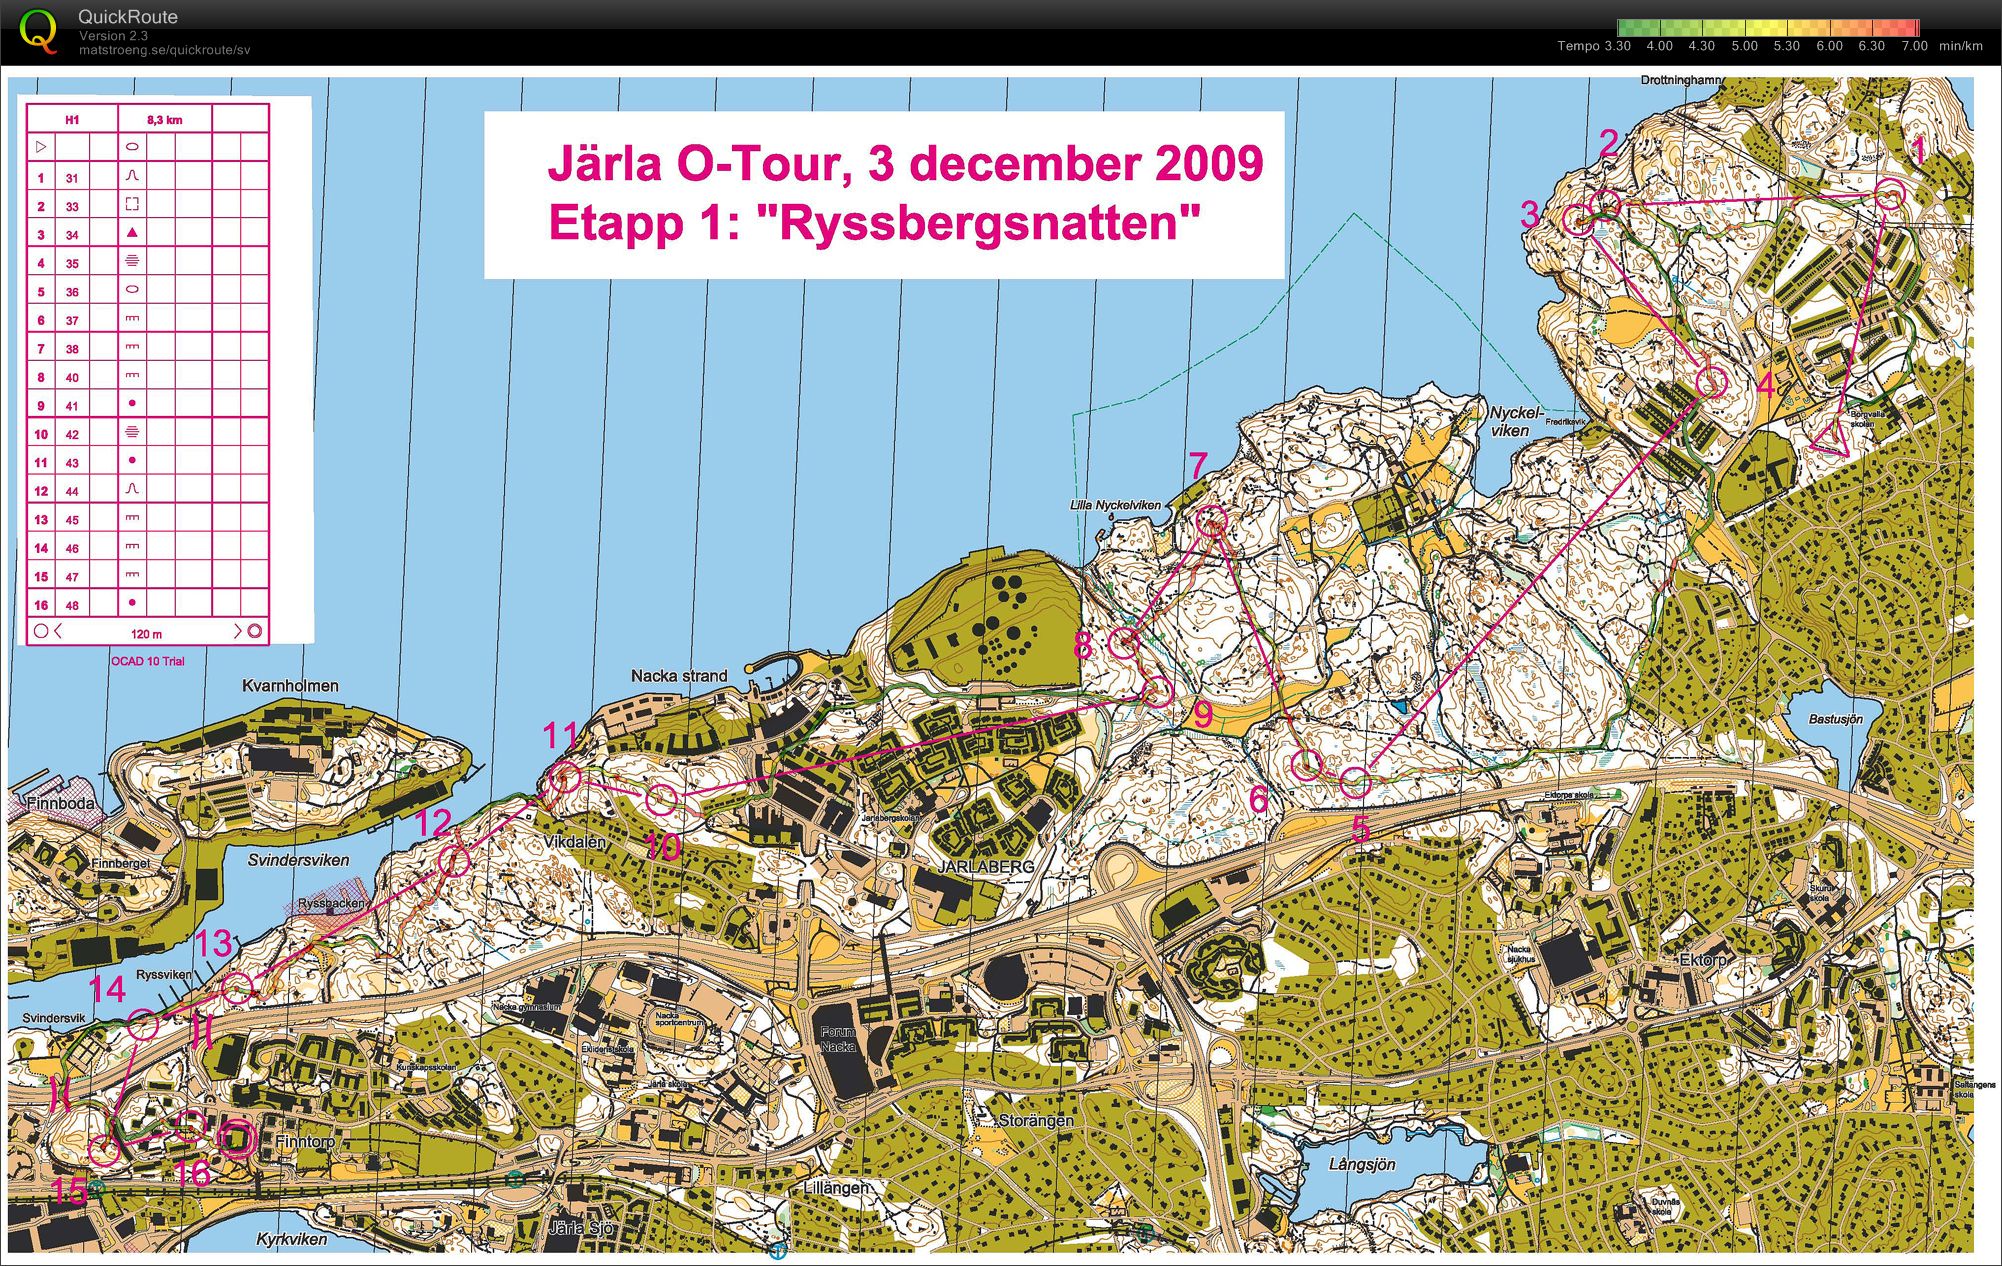 Järla O-tour etapp1 - Ryssbergsnatten (03/12/2009)